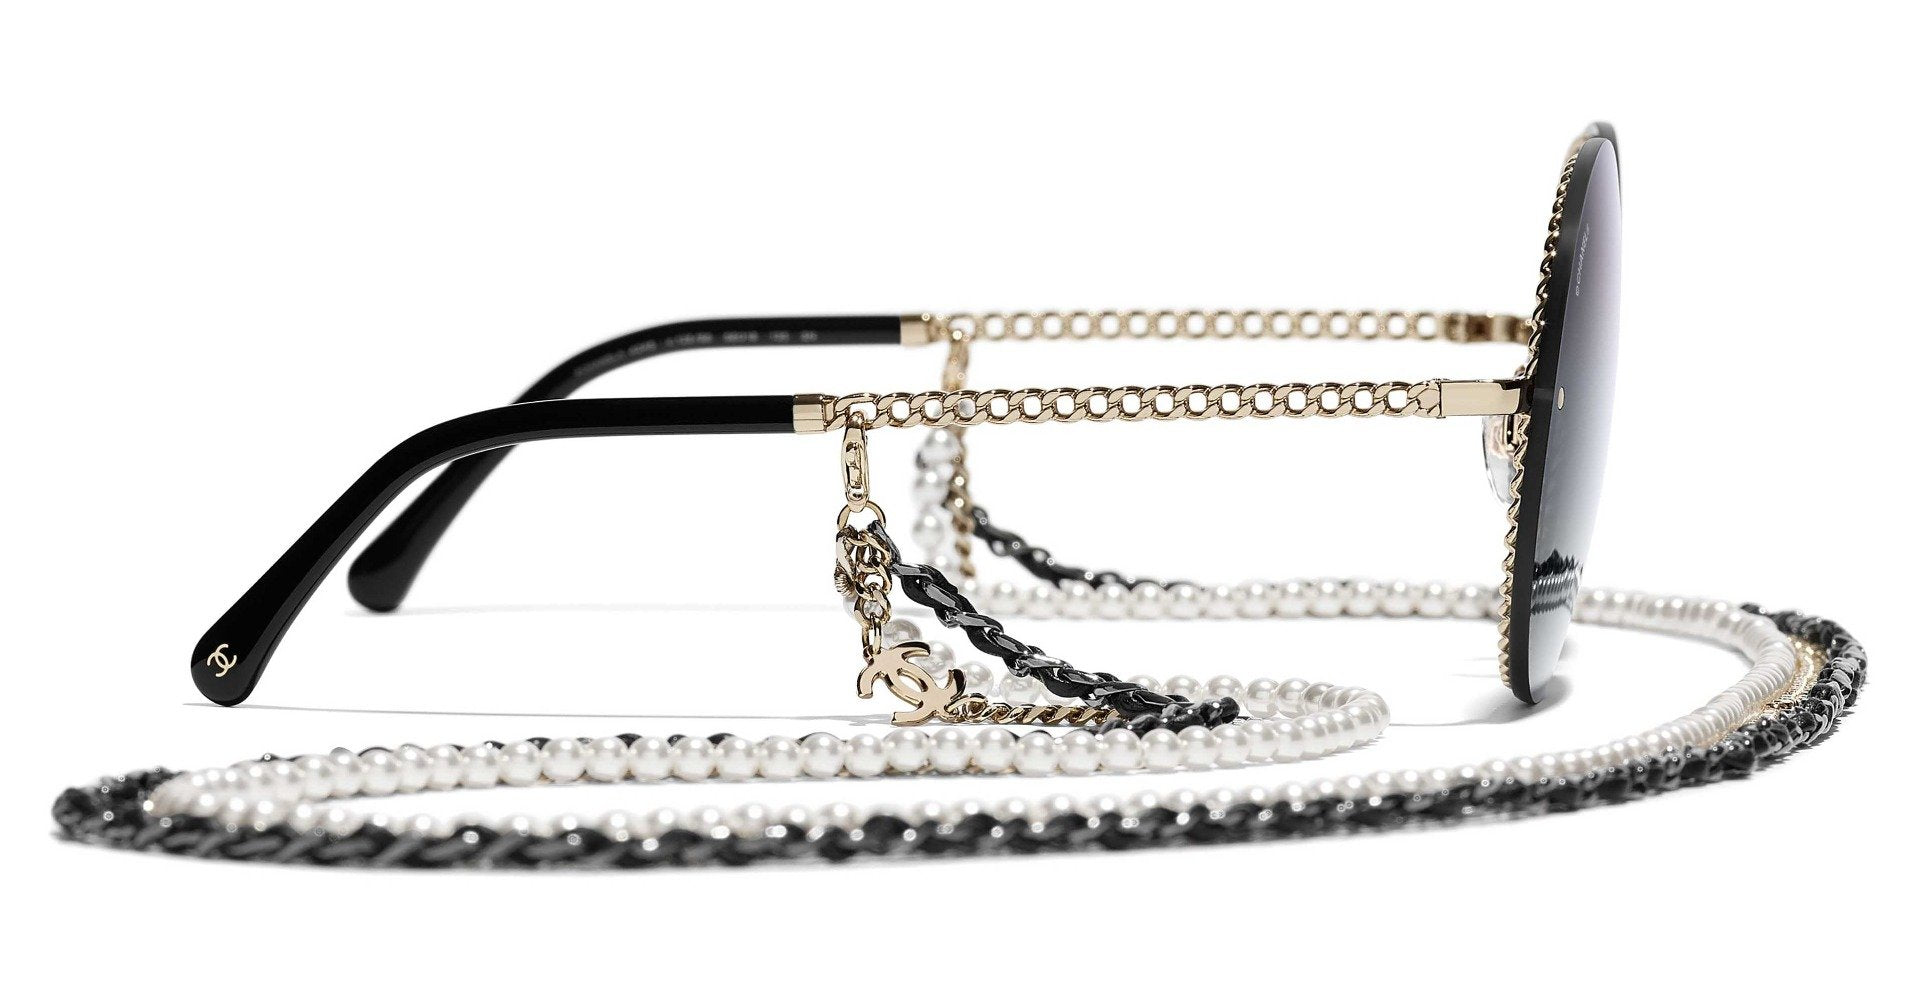 Chanel Gold Tone/Purple Gradient 4245 Pearl Chain Round Sunglasses Chanel